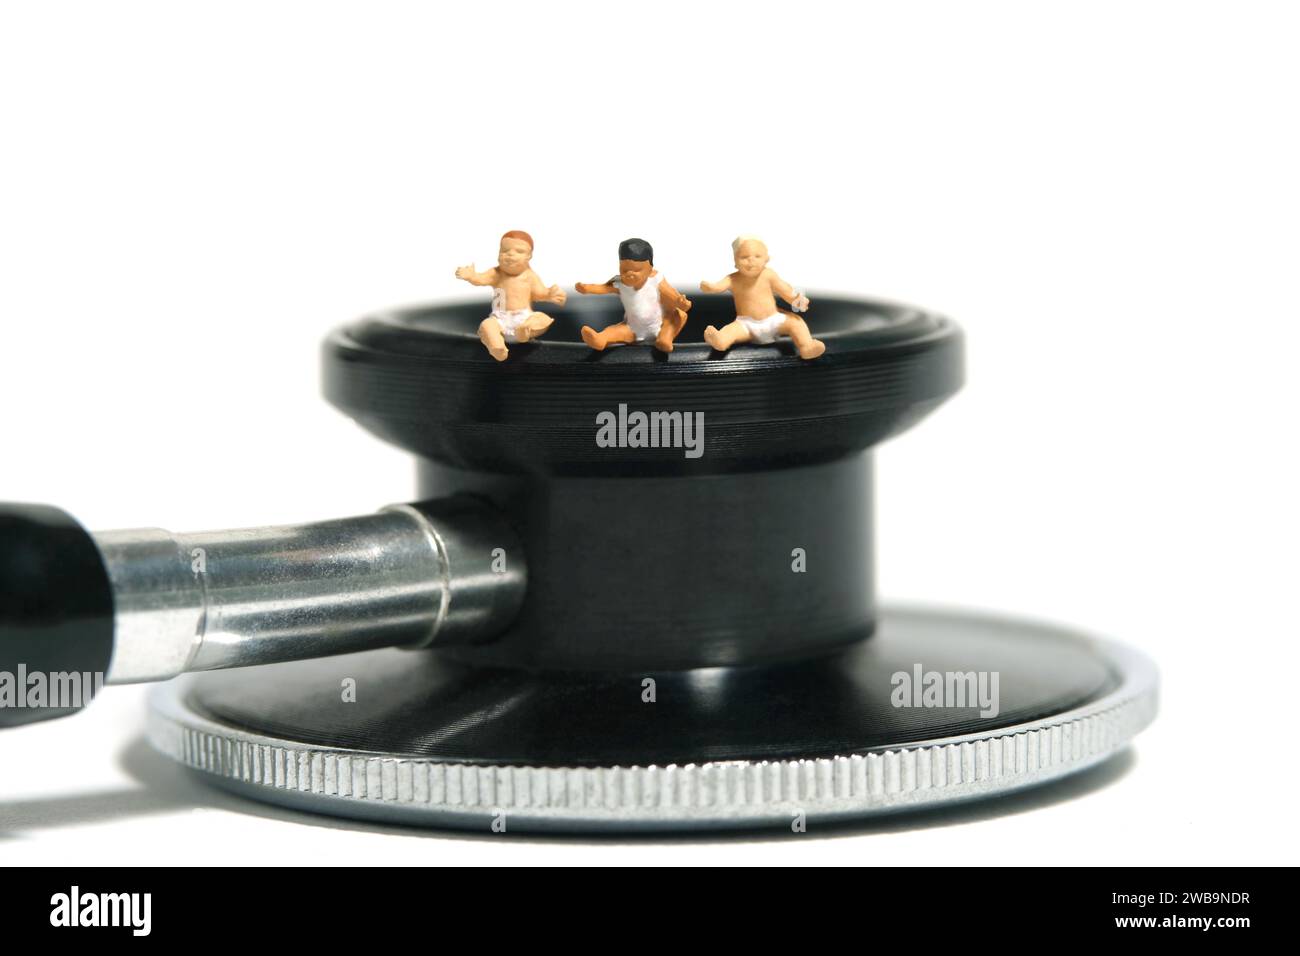 Fotografia di figure giocattolo in miniatura. Gruppo di bambini seduti sopra lo stetoscopio. Isolato su sfondo bianco. Foto immagine Foto Stock